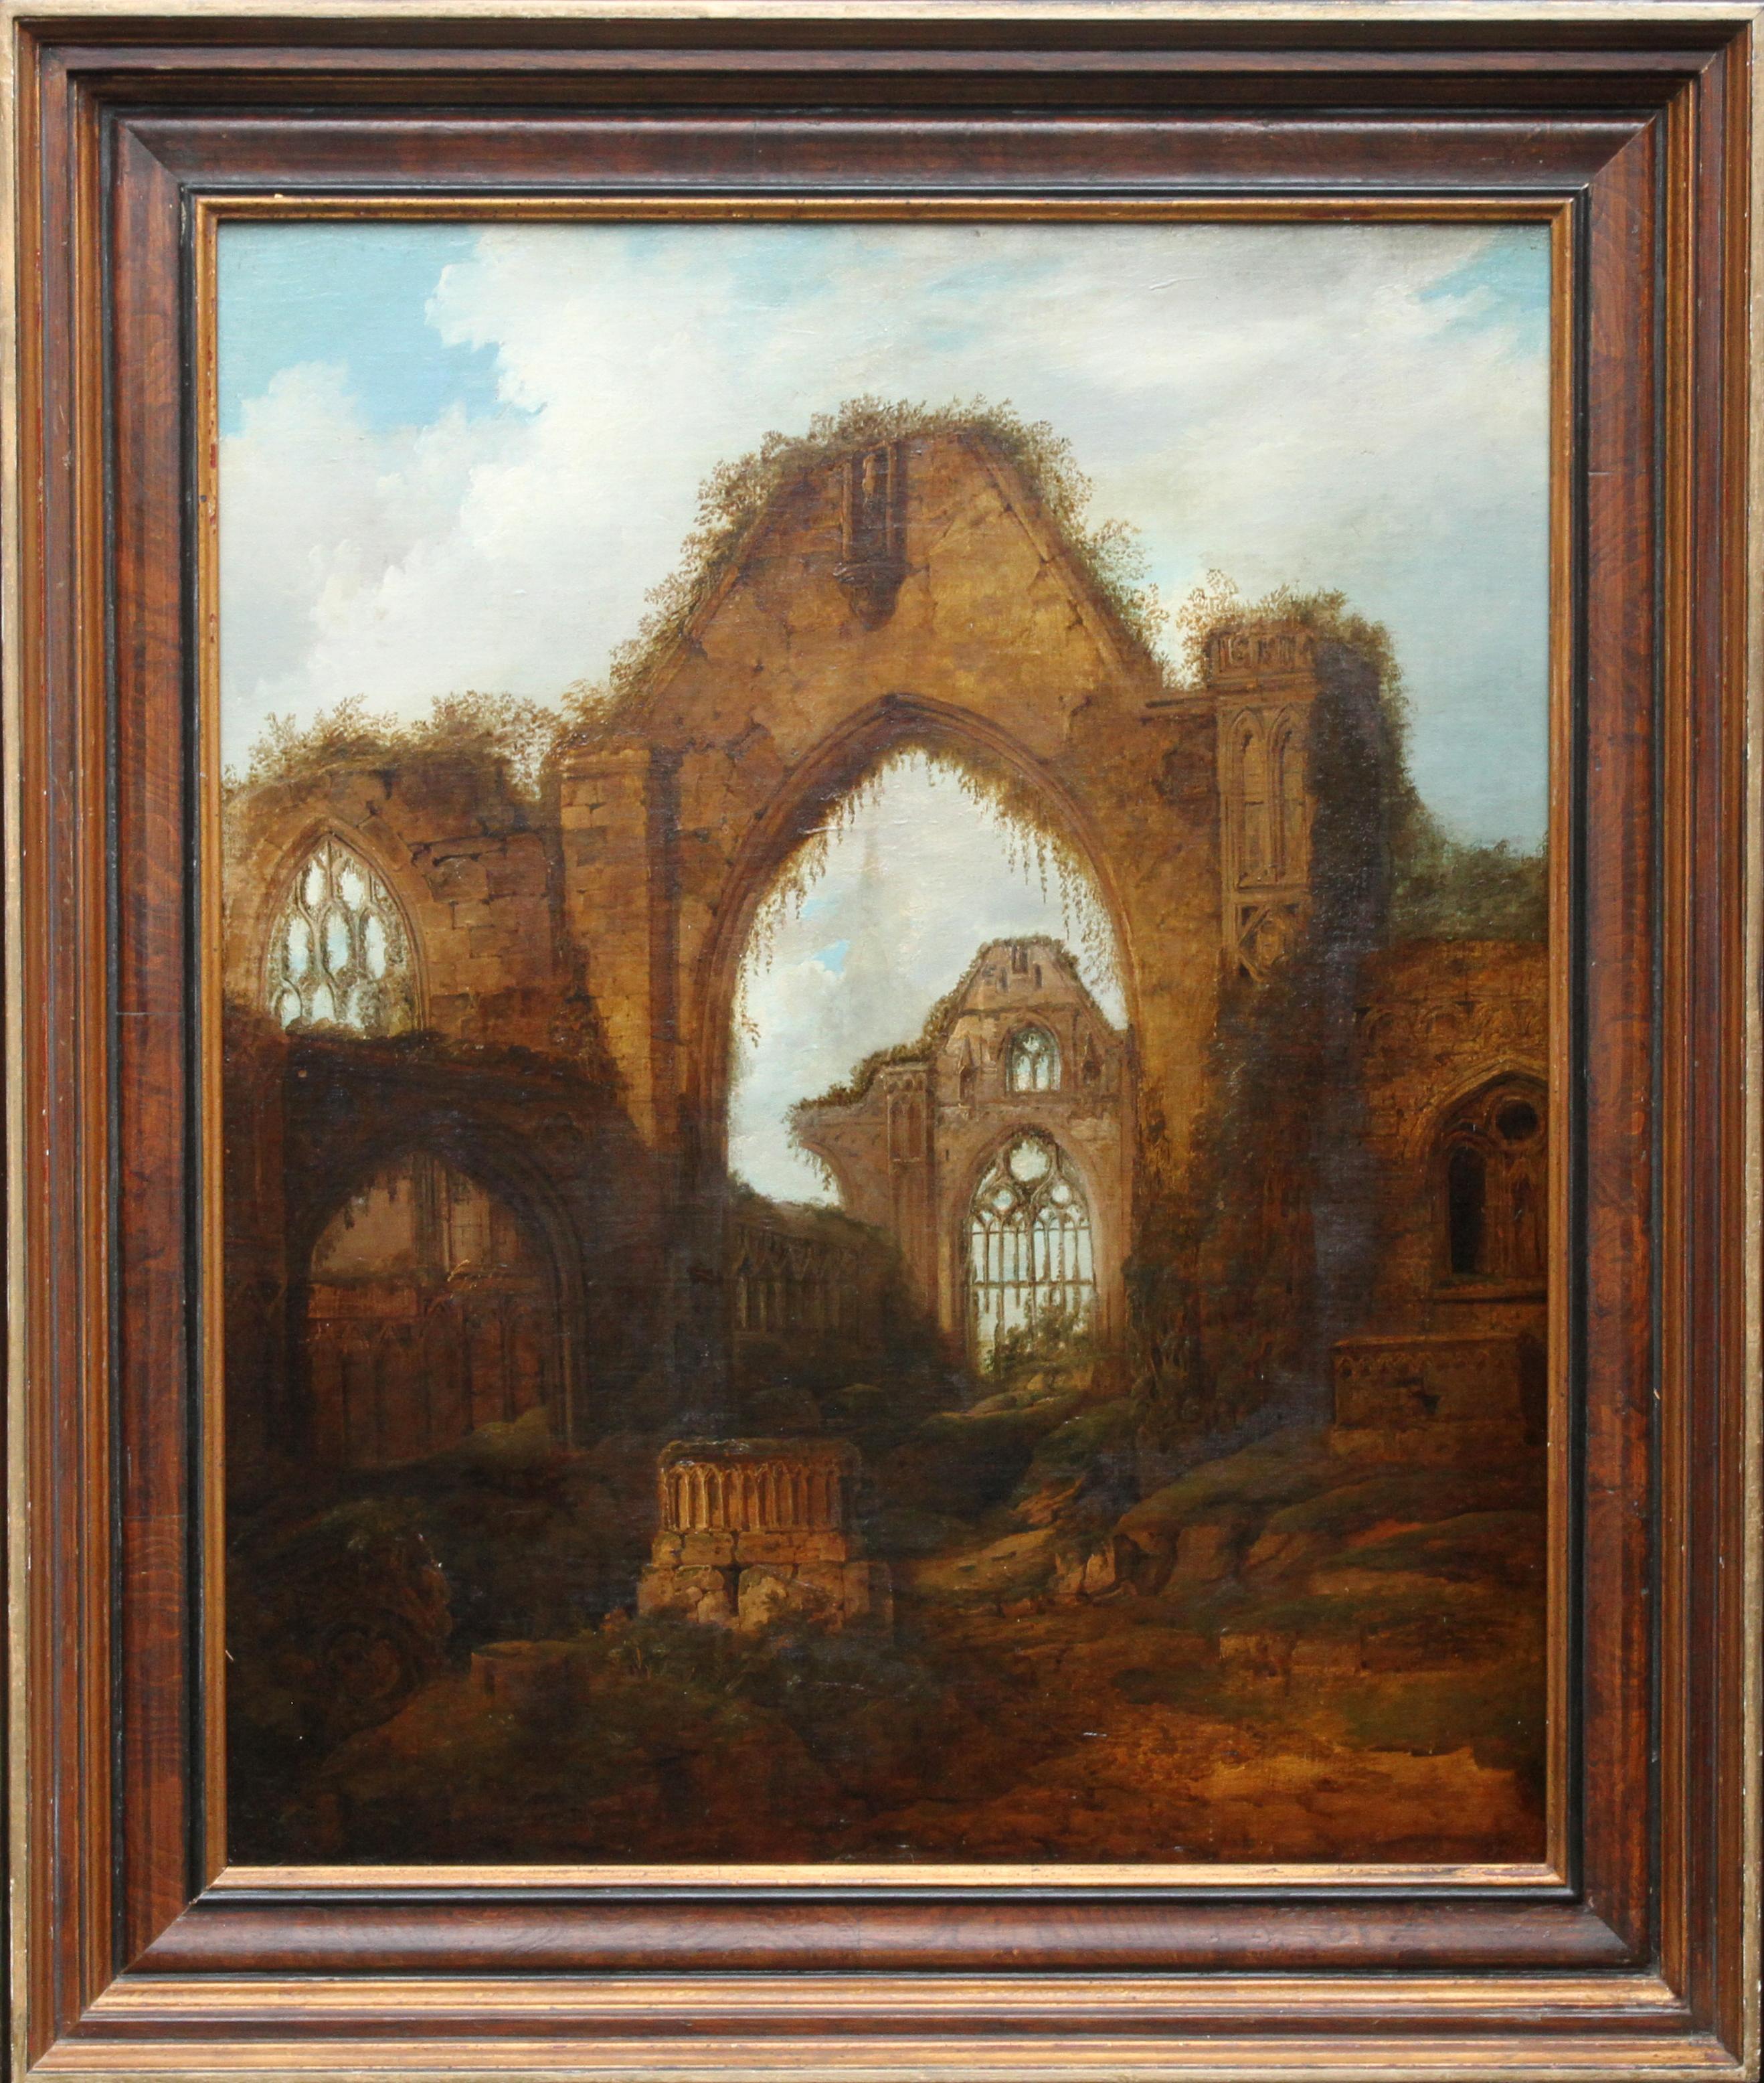 Rues d'abbaye romantiques, Haughmond - Peinture à l'huile religieuse britannique du 19e siècle